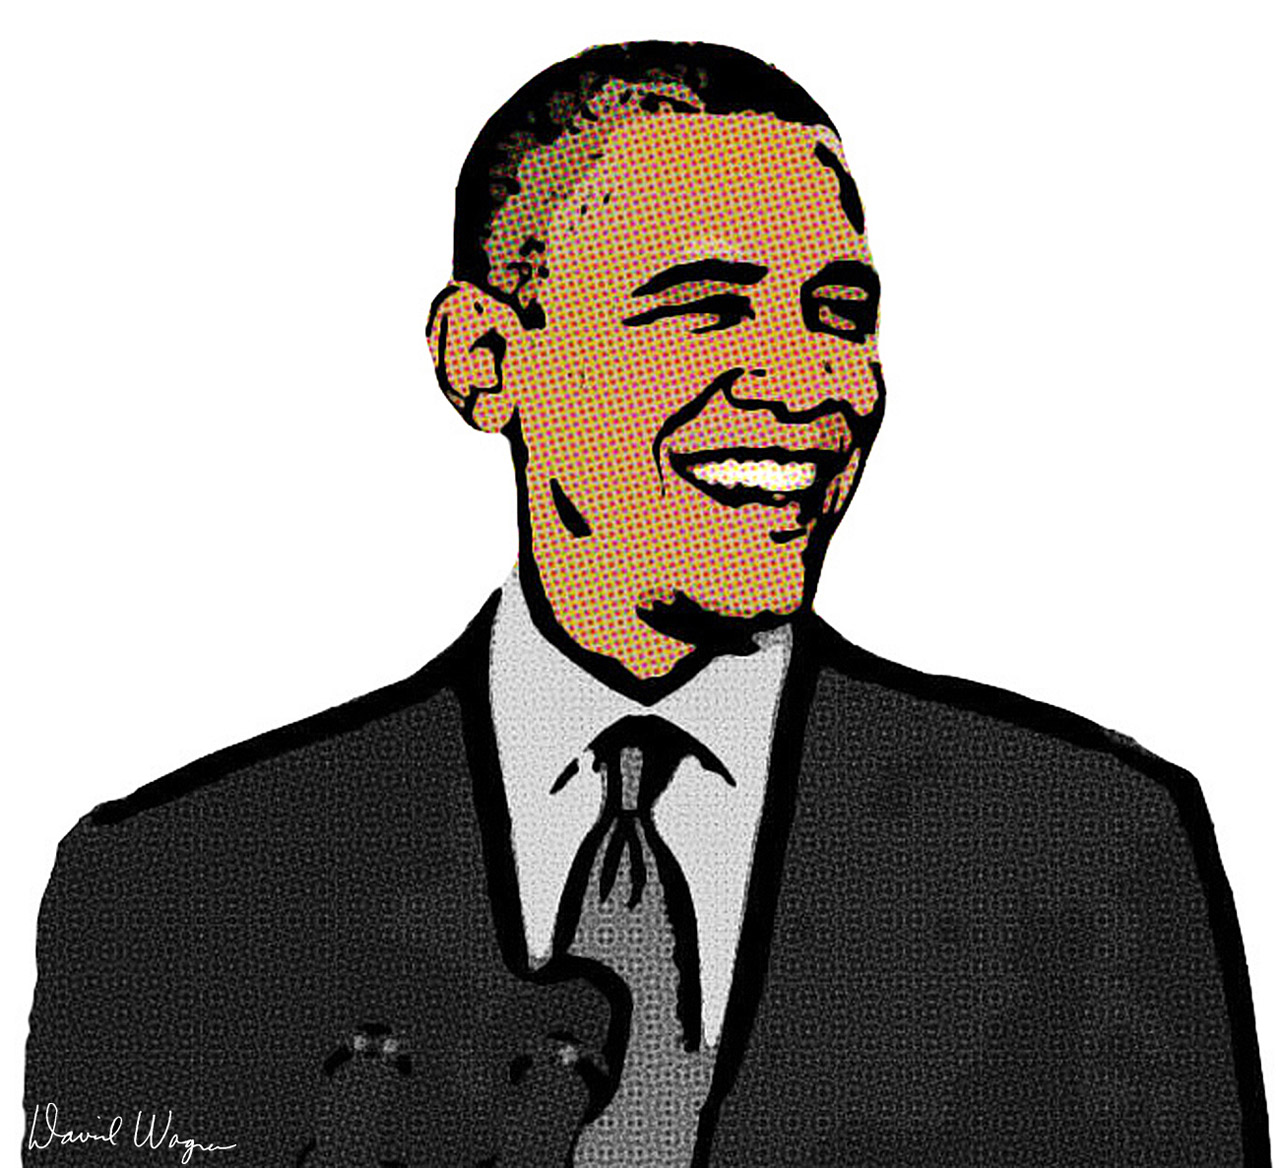 Obamau0027s smile - csp140172